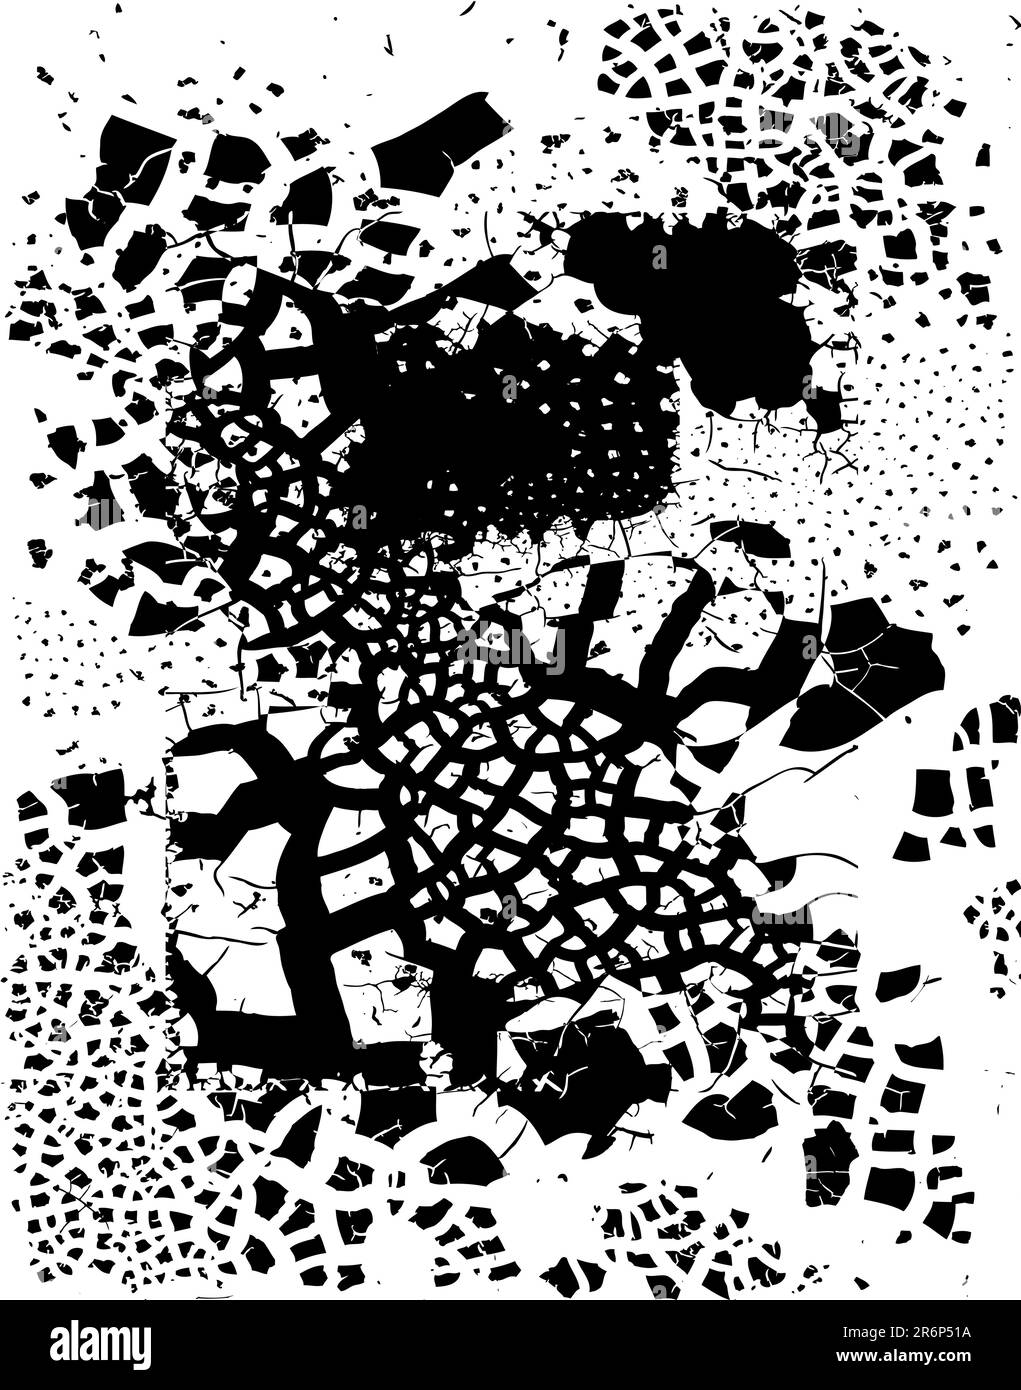 Editierbare Vektor-Illustration von einzigartigen Grunge-Muster Stock Vektor